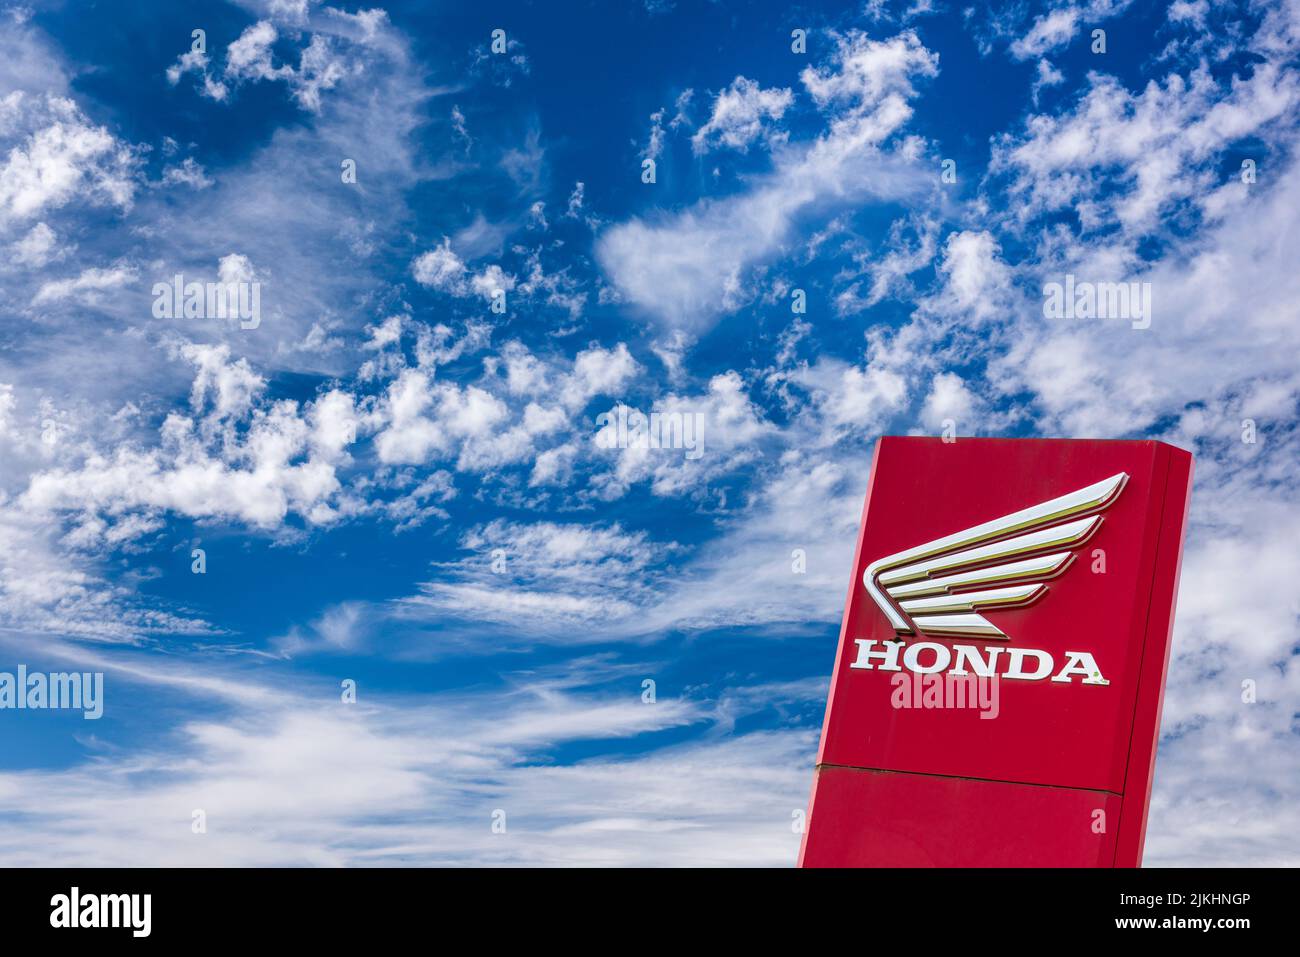 Company sign and logo of car company Honda Stock Photo